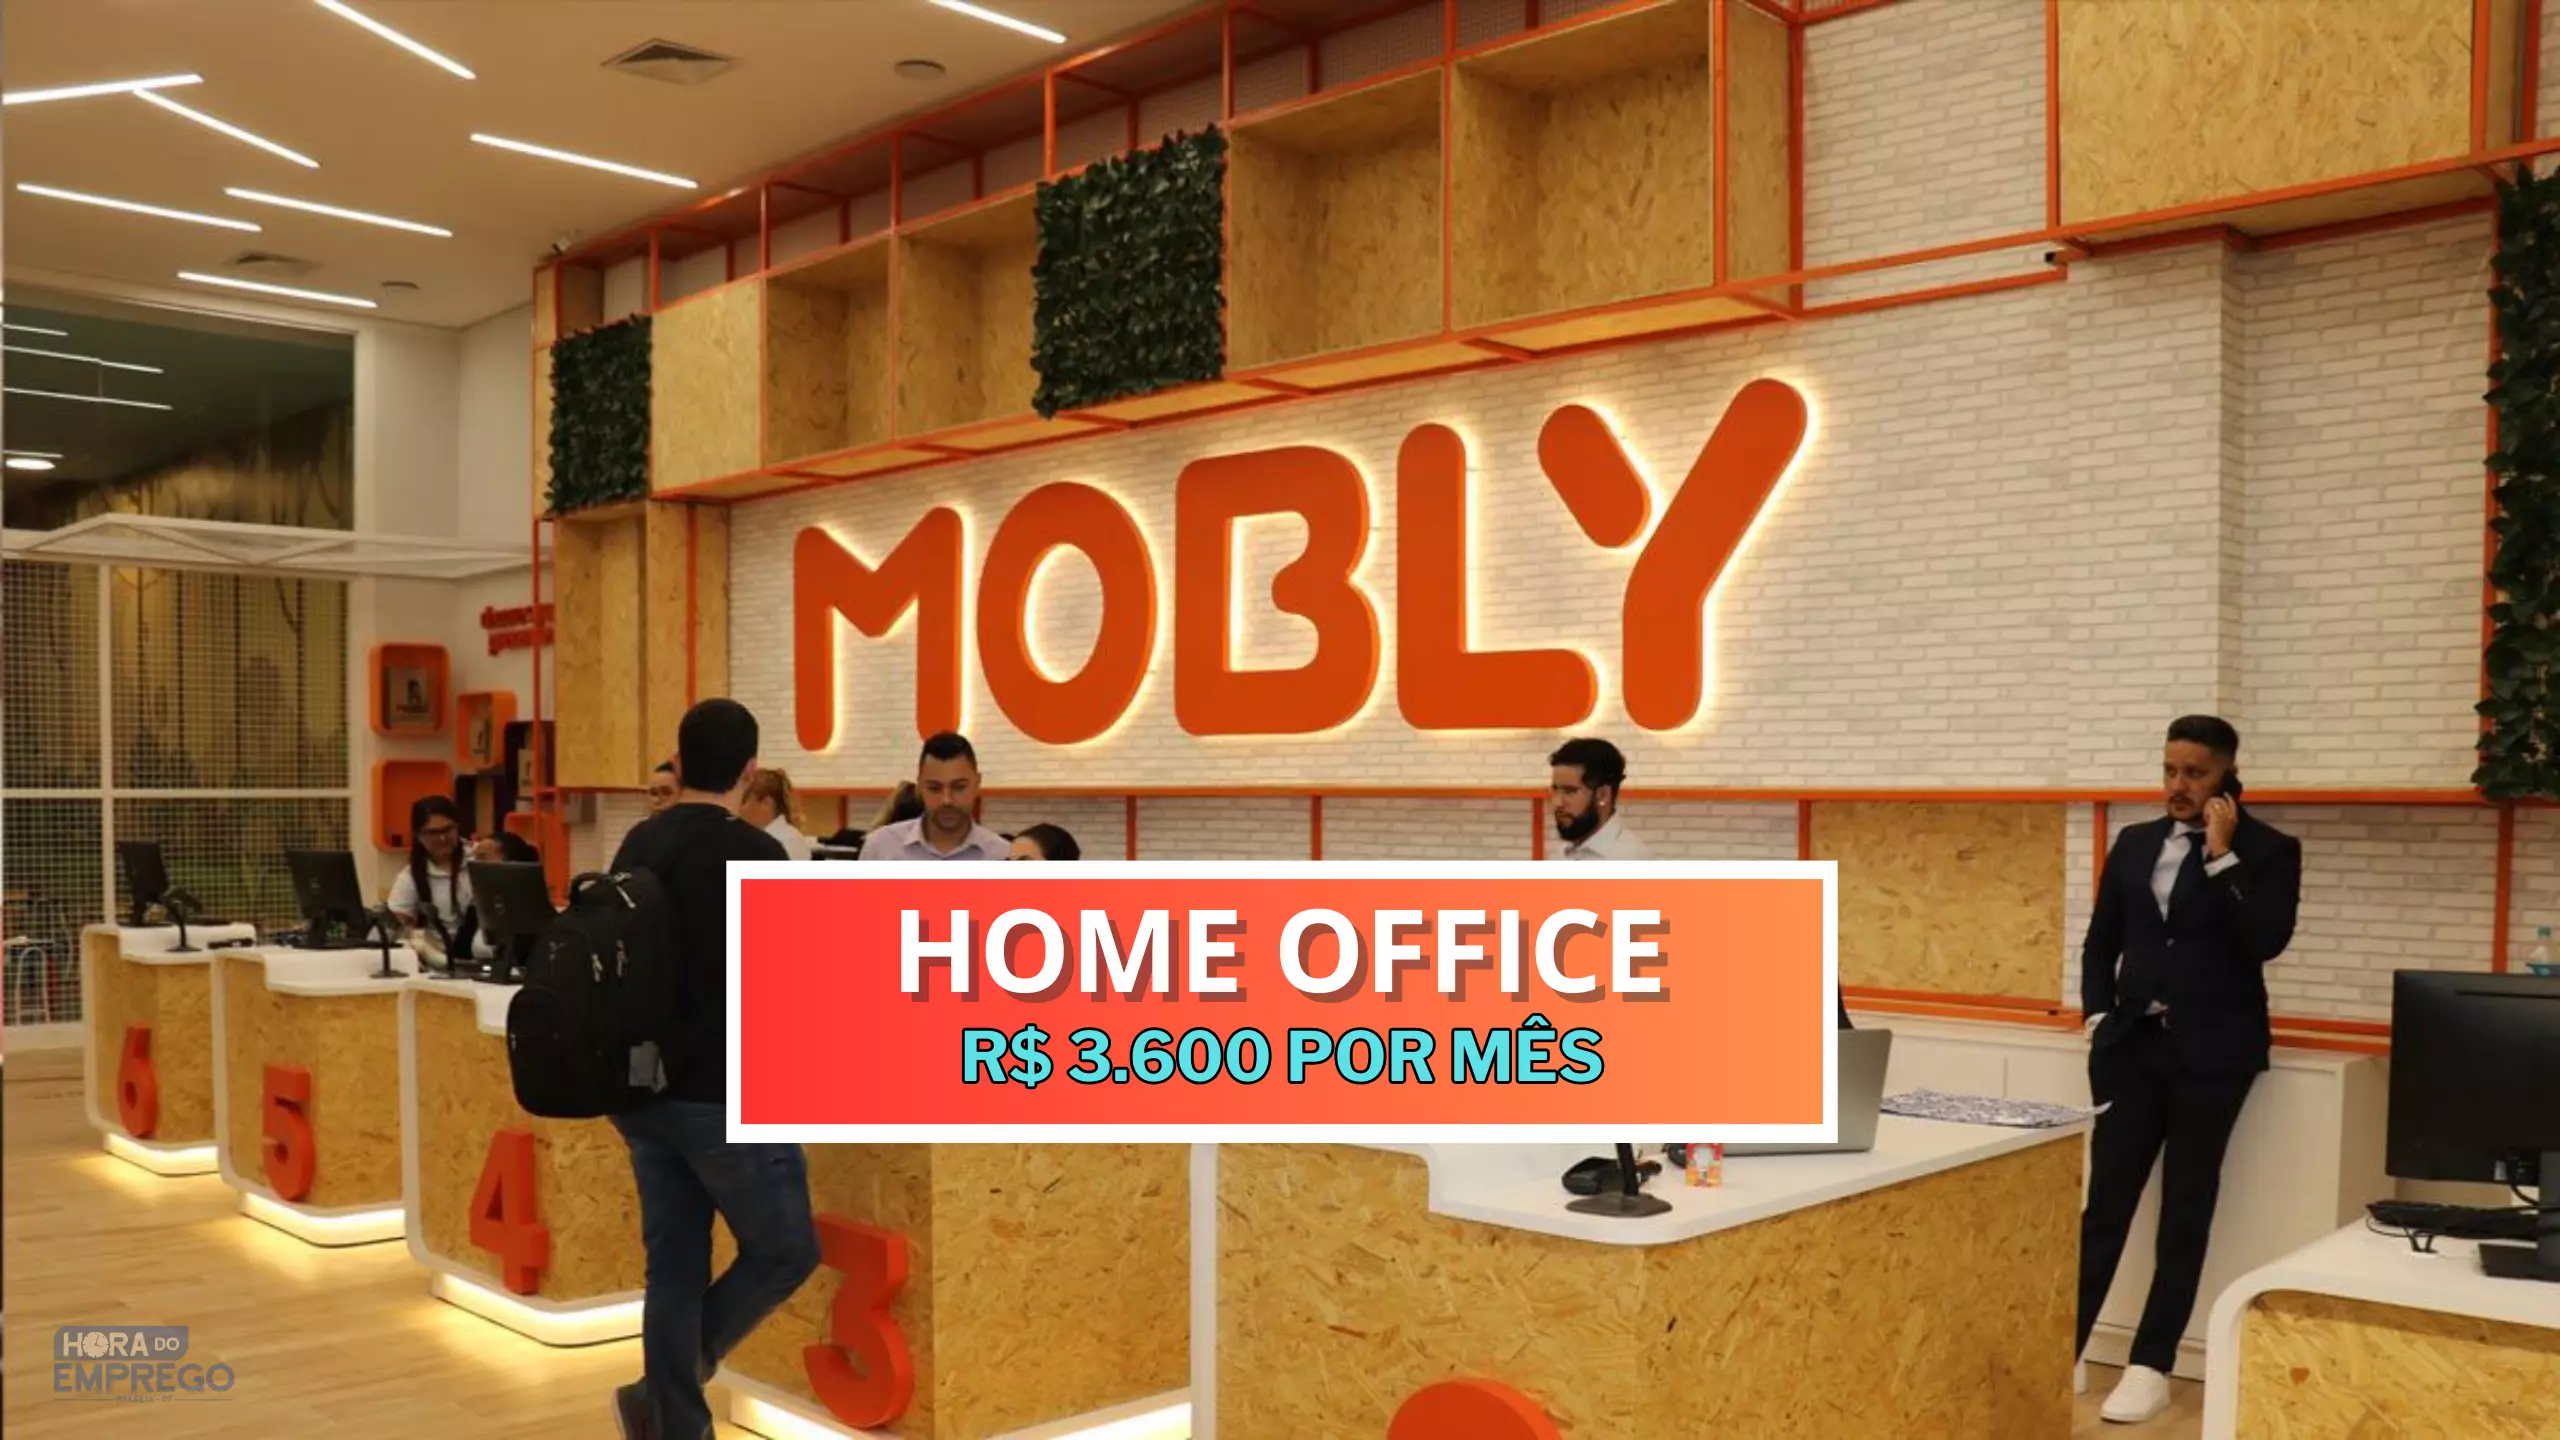 Tabalhe de Casa: Mobly abre vaga HOME OFFICE para Analista de Atendimento II com salário de R$ 3.600 por mês